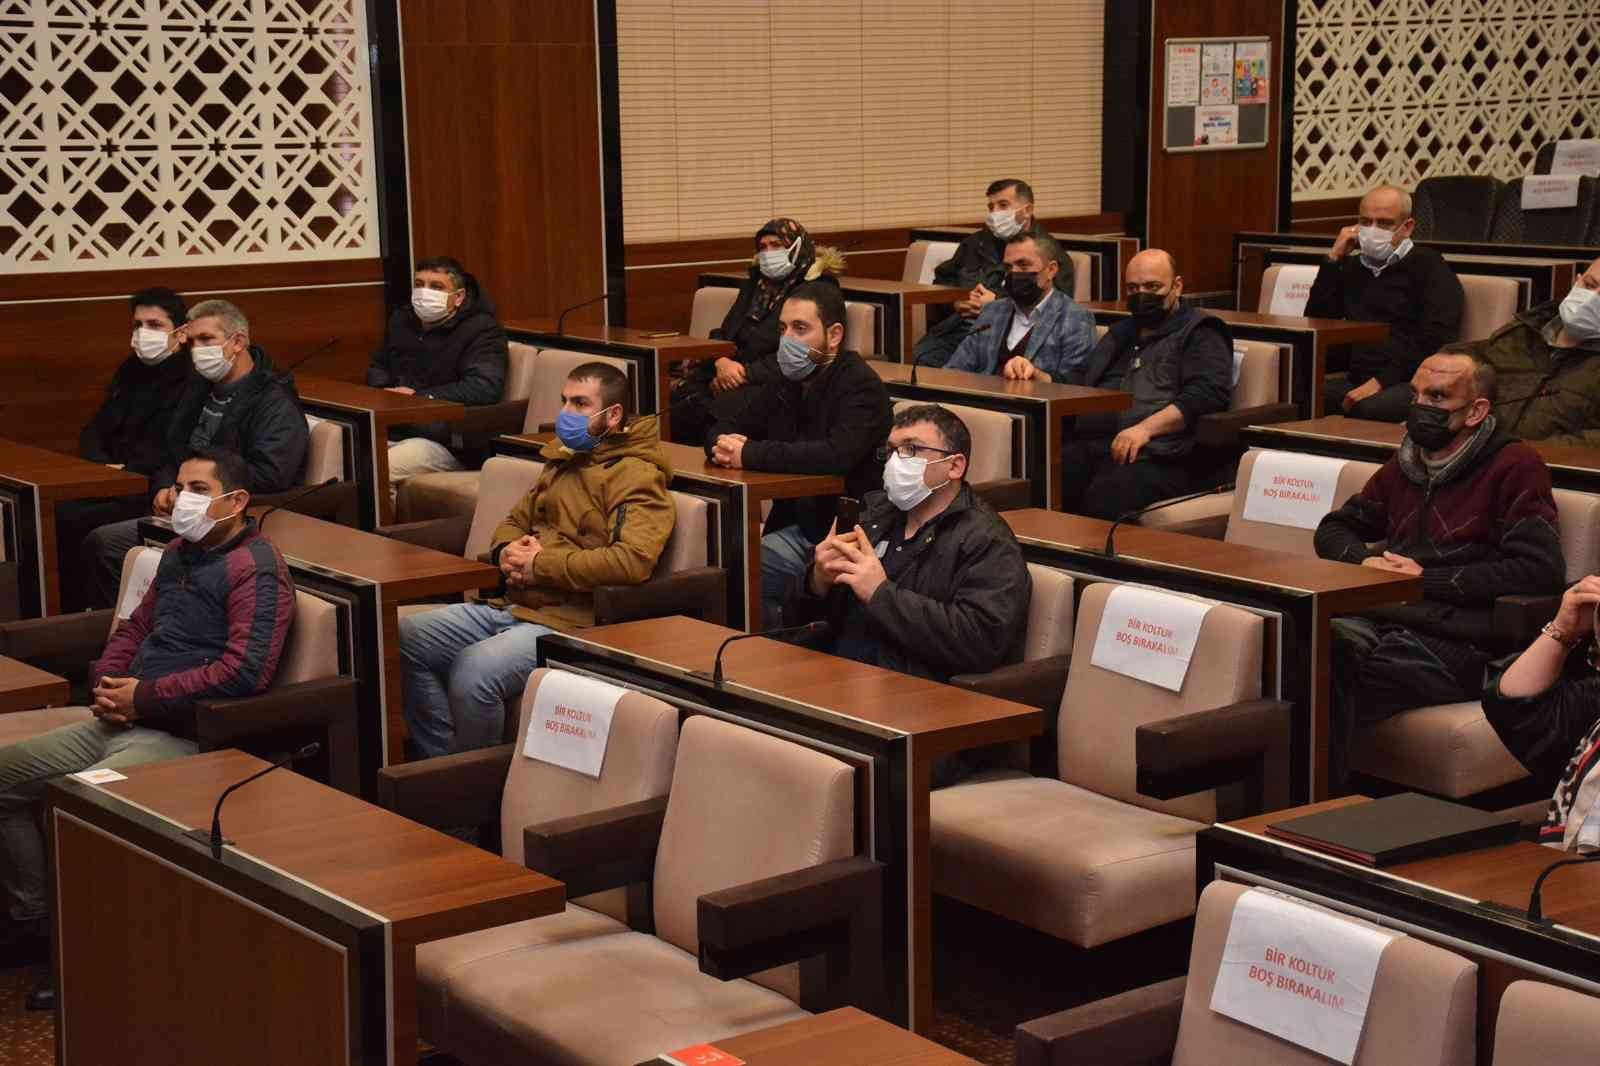 Keçiören Belediyesi personeline sertifikalı hijyen eğitimi #ankara